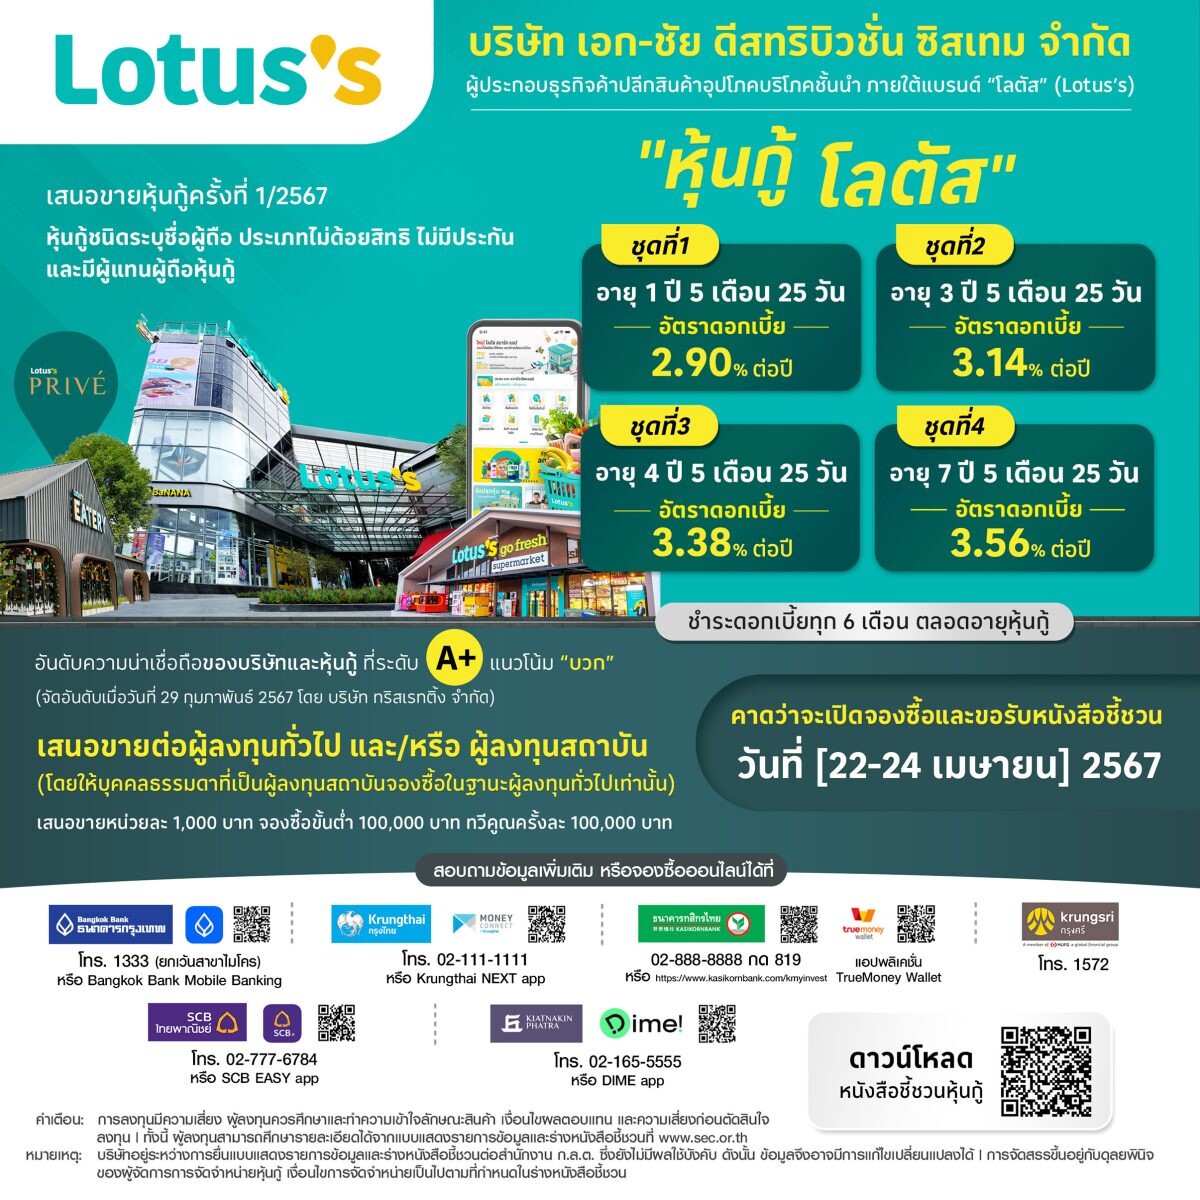 "โลตัส" (Lotus's) เคาะอัตราดอกเบี้ยหุ้นกู้ 4 ชุด อัตรา 2.90-3.56% ต่อปี เปิดโอกาสประชาชนทั่วไปจองซื้อ 22-24 เมษายน 2567